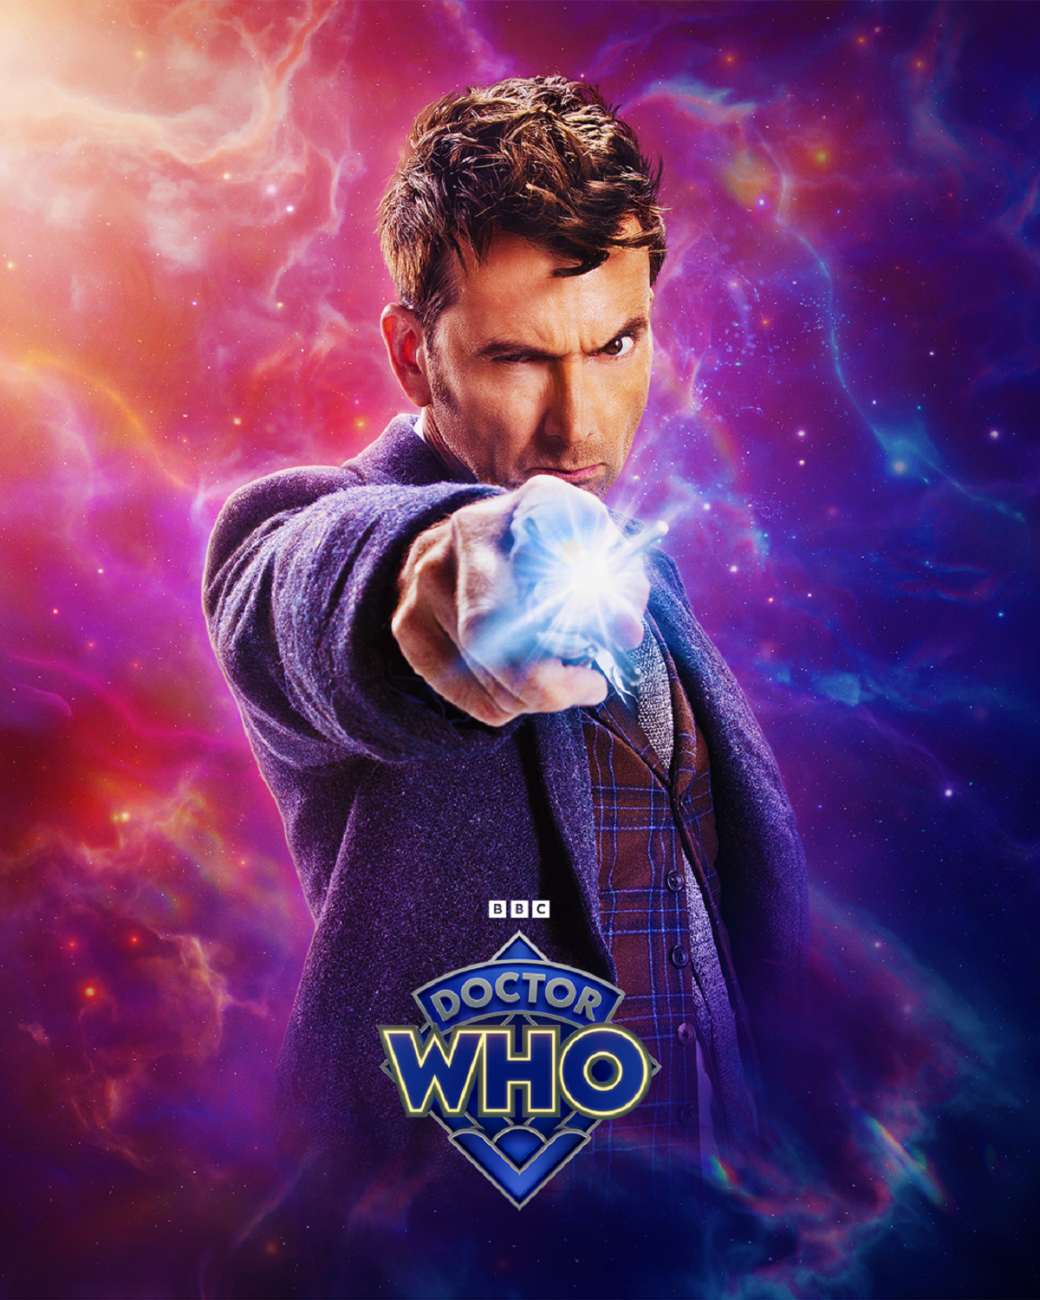 Галерея Яркие персональные постеры сериала Doctor Who посвятили двум Докторам и их спутницам - 4 фото